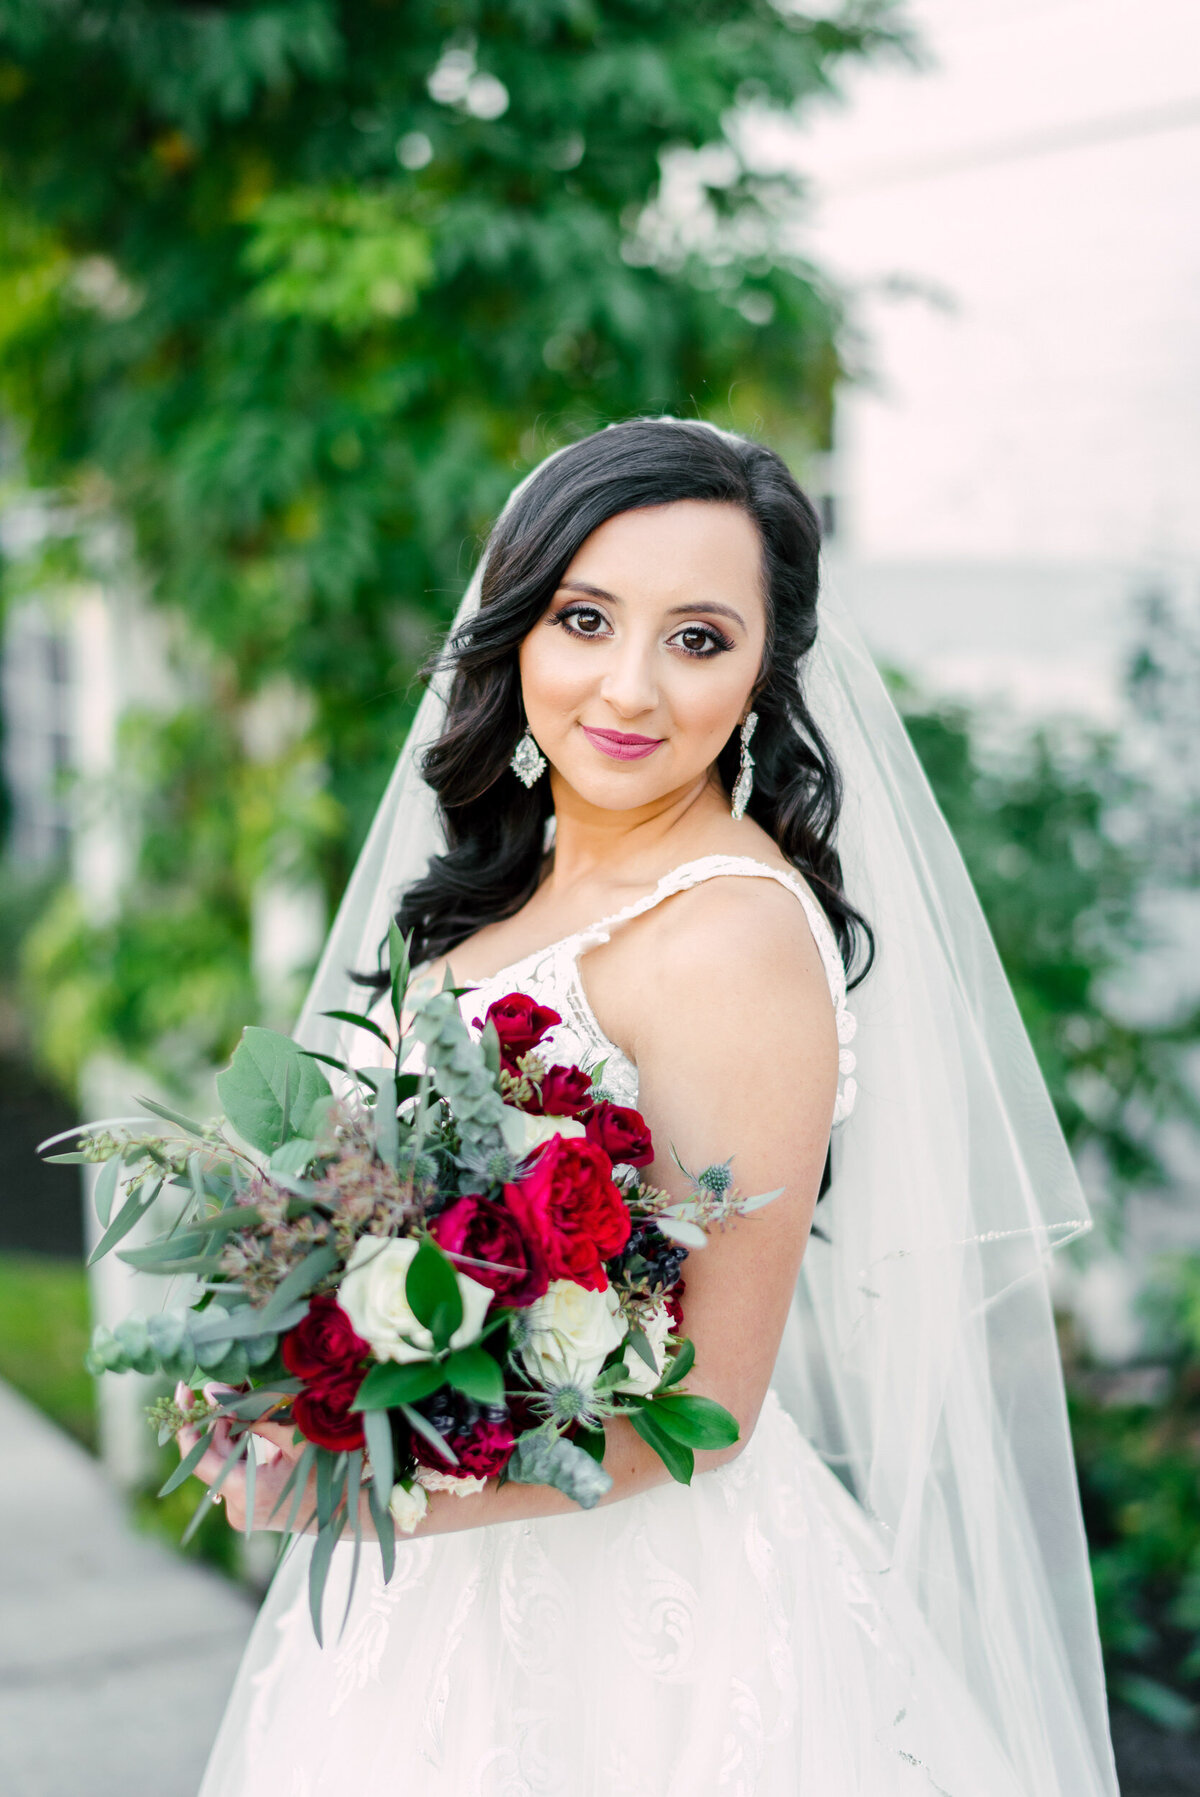 Montgomery-Bridals-Wedding-Photographer-Samantha-20200107-0160